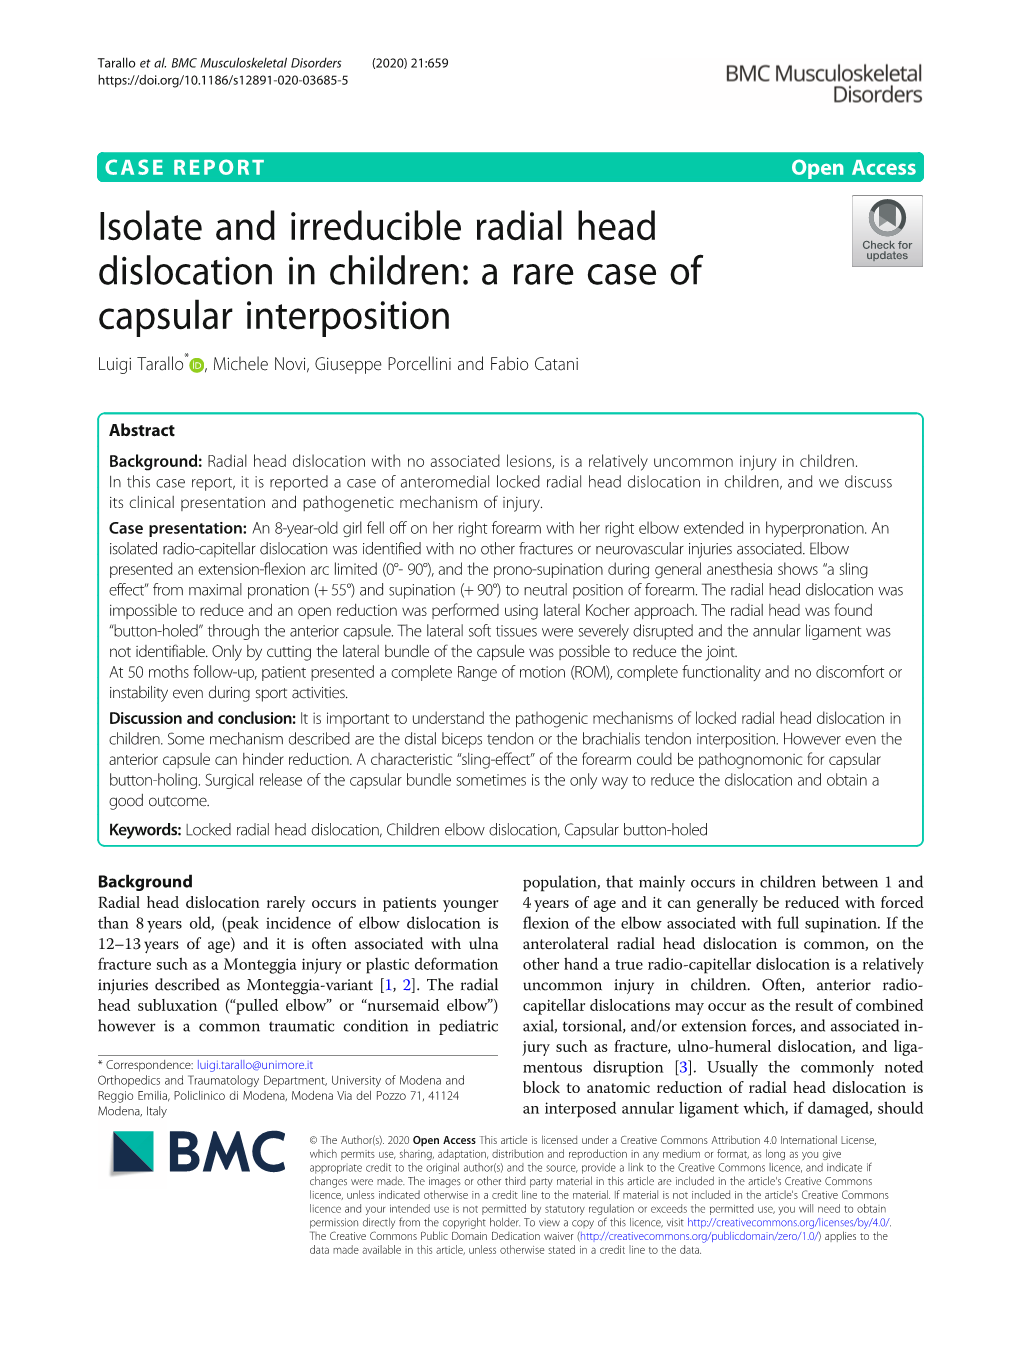 Isolate and Irreducible Radial Head Dislocation in Children: a Rare Case of Capsular Interposition Luigi Tarallo* , Michele Novi, Giuseppe Porcellini and Fabio Catani